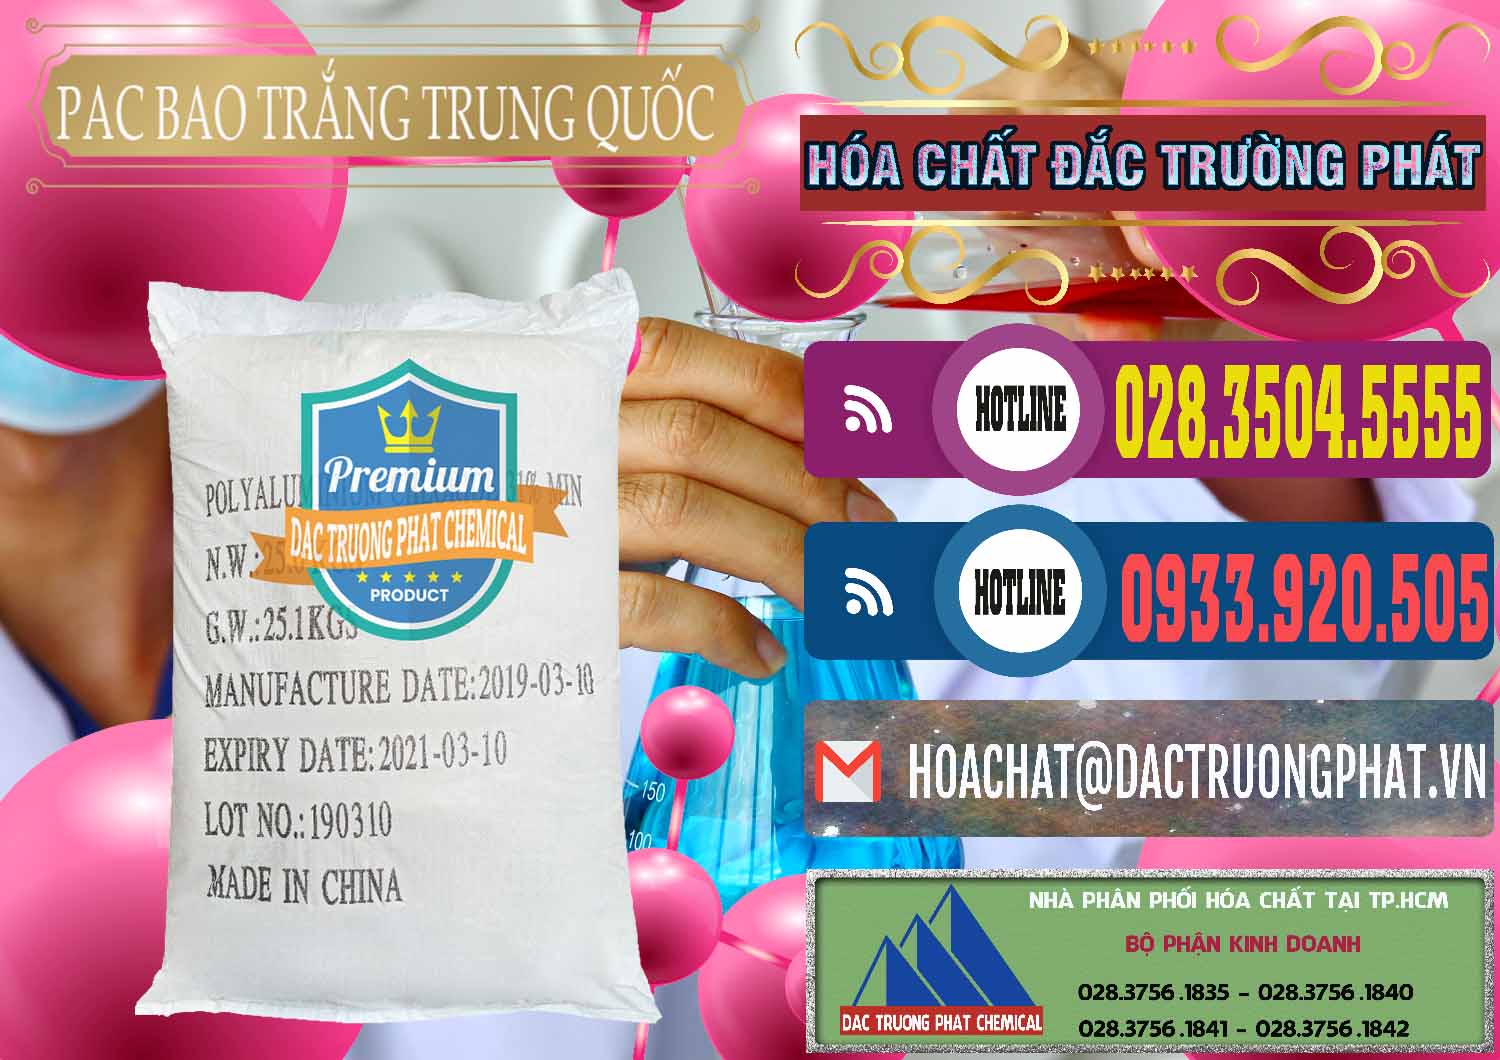 Cty kinh doanh và bán PAC - Polyaluminium Chloride Bao Trắng Trung Quốc China - 0108 - Nơi cung cấp & phân phối hóa chất tại TP.HCM - muabanhoachat.com.vn